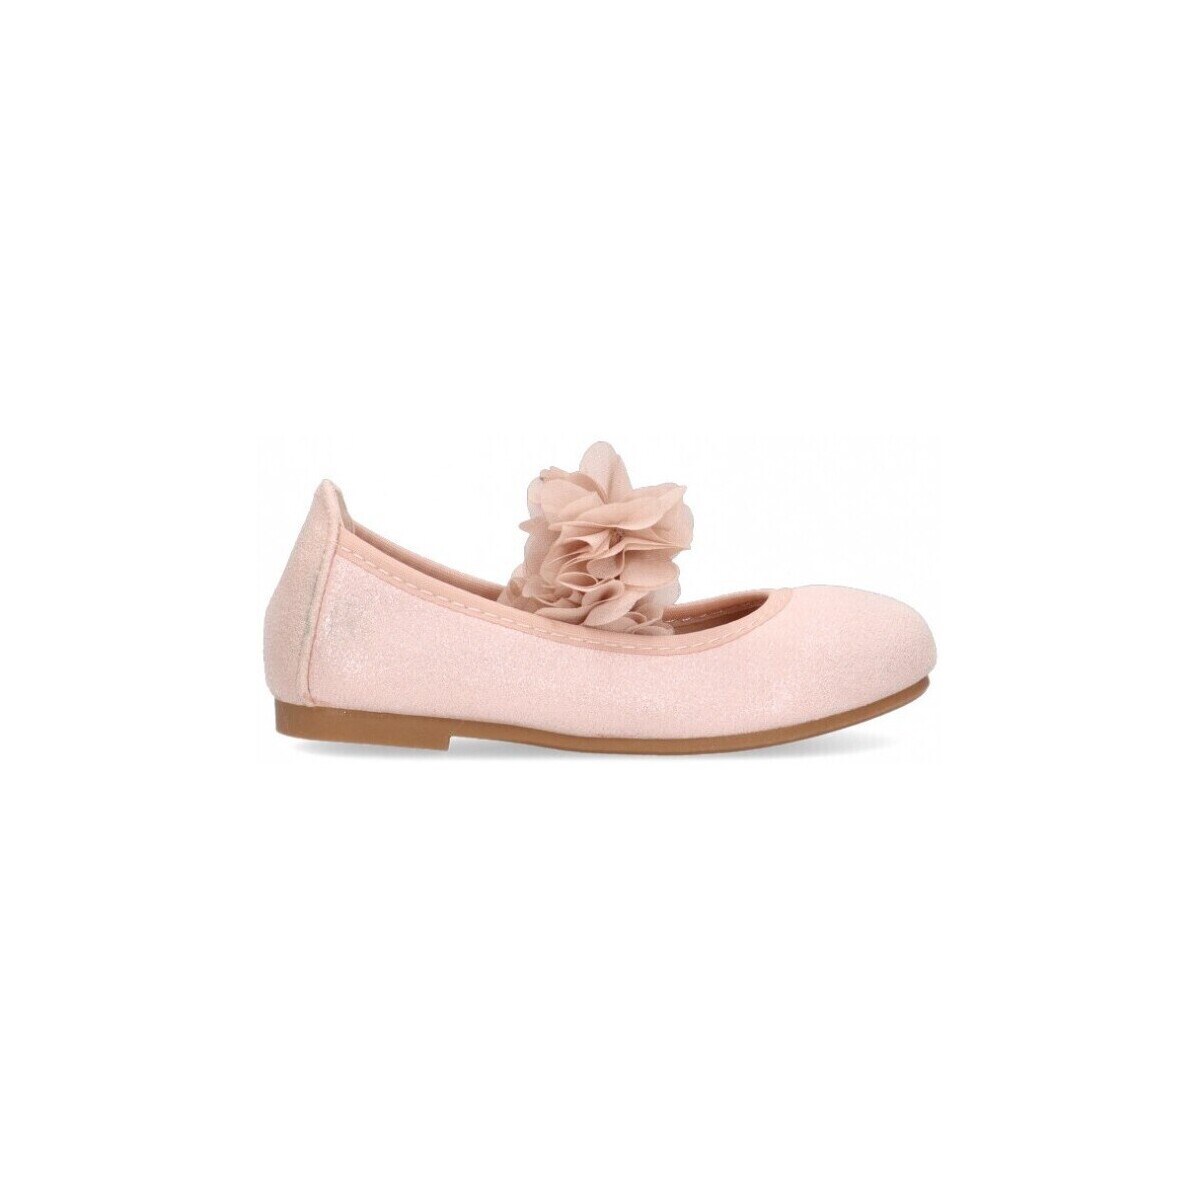 Παπούτσια Κορίτσι Μπαλαρίνες Luna Kids 68787 Ροζ